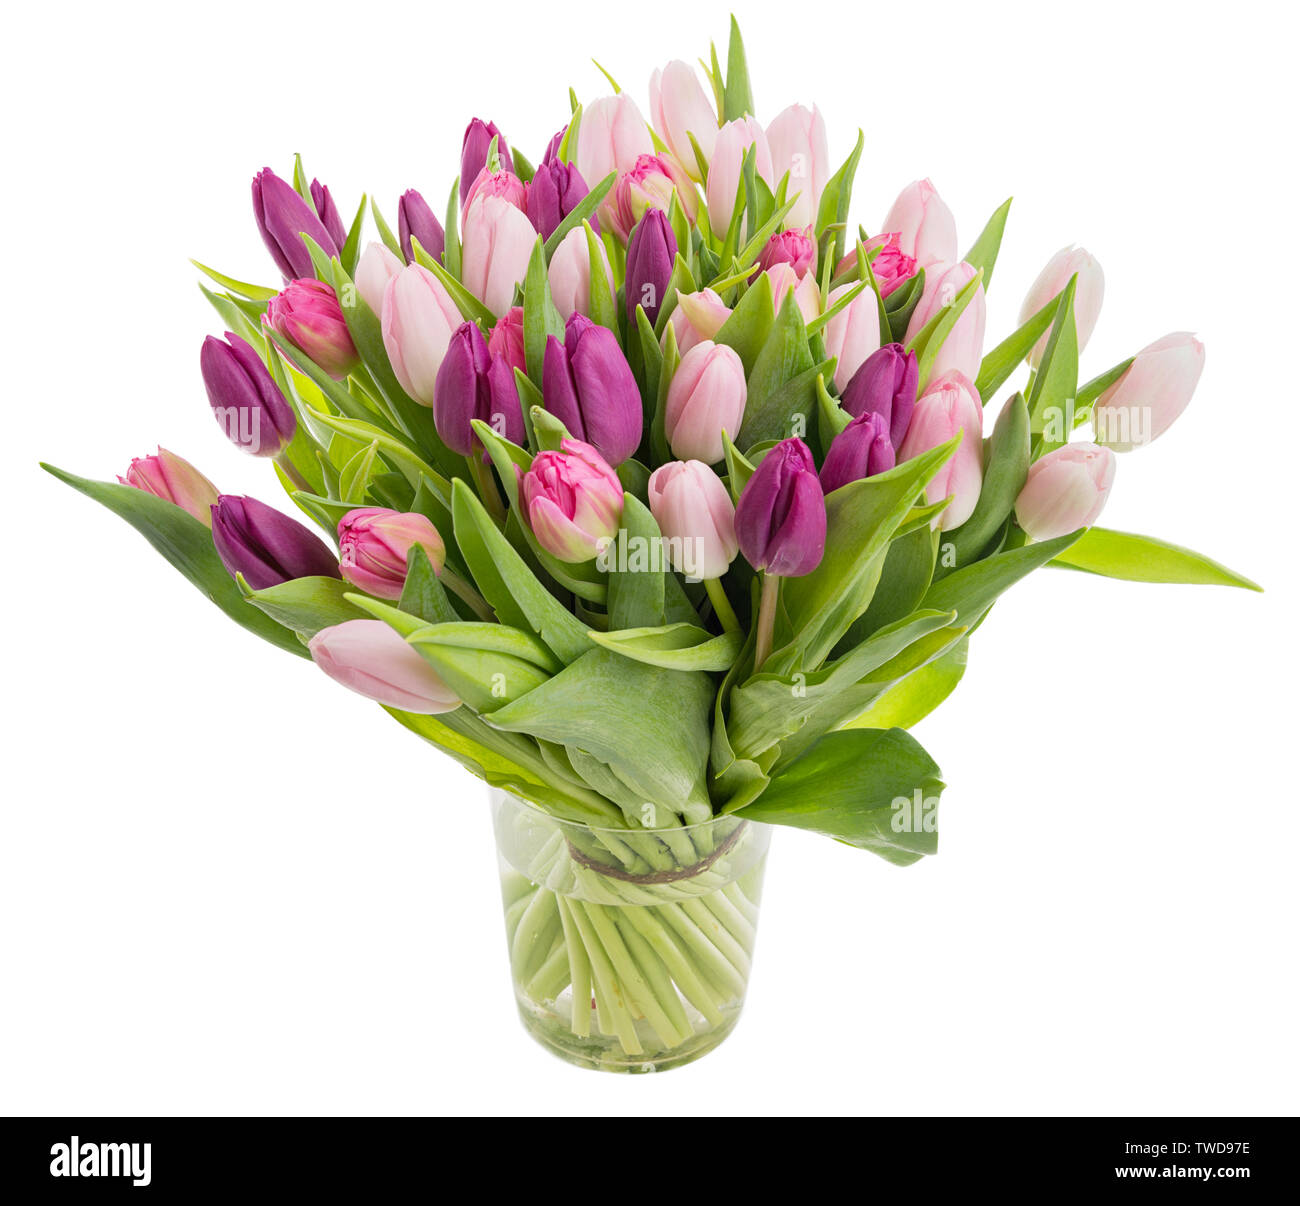 Grand groupe De belles fleurs tulipes dans un vase de verre isolé sur fond blanc Banque D'Images